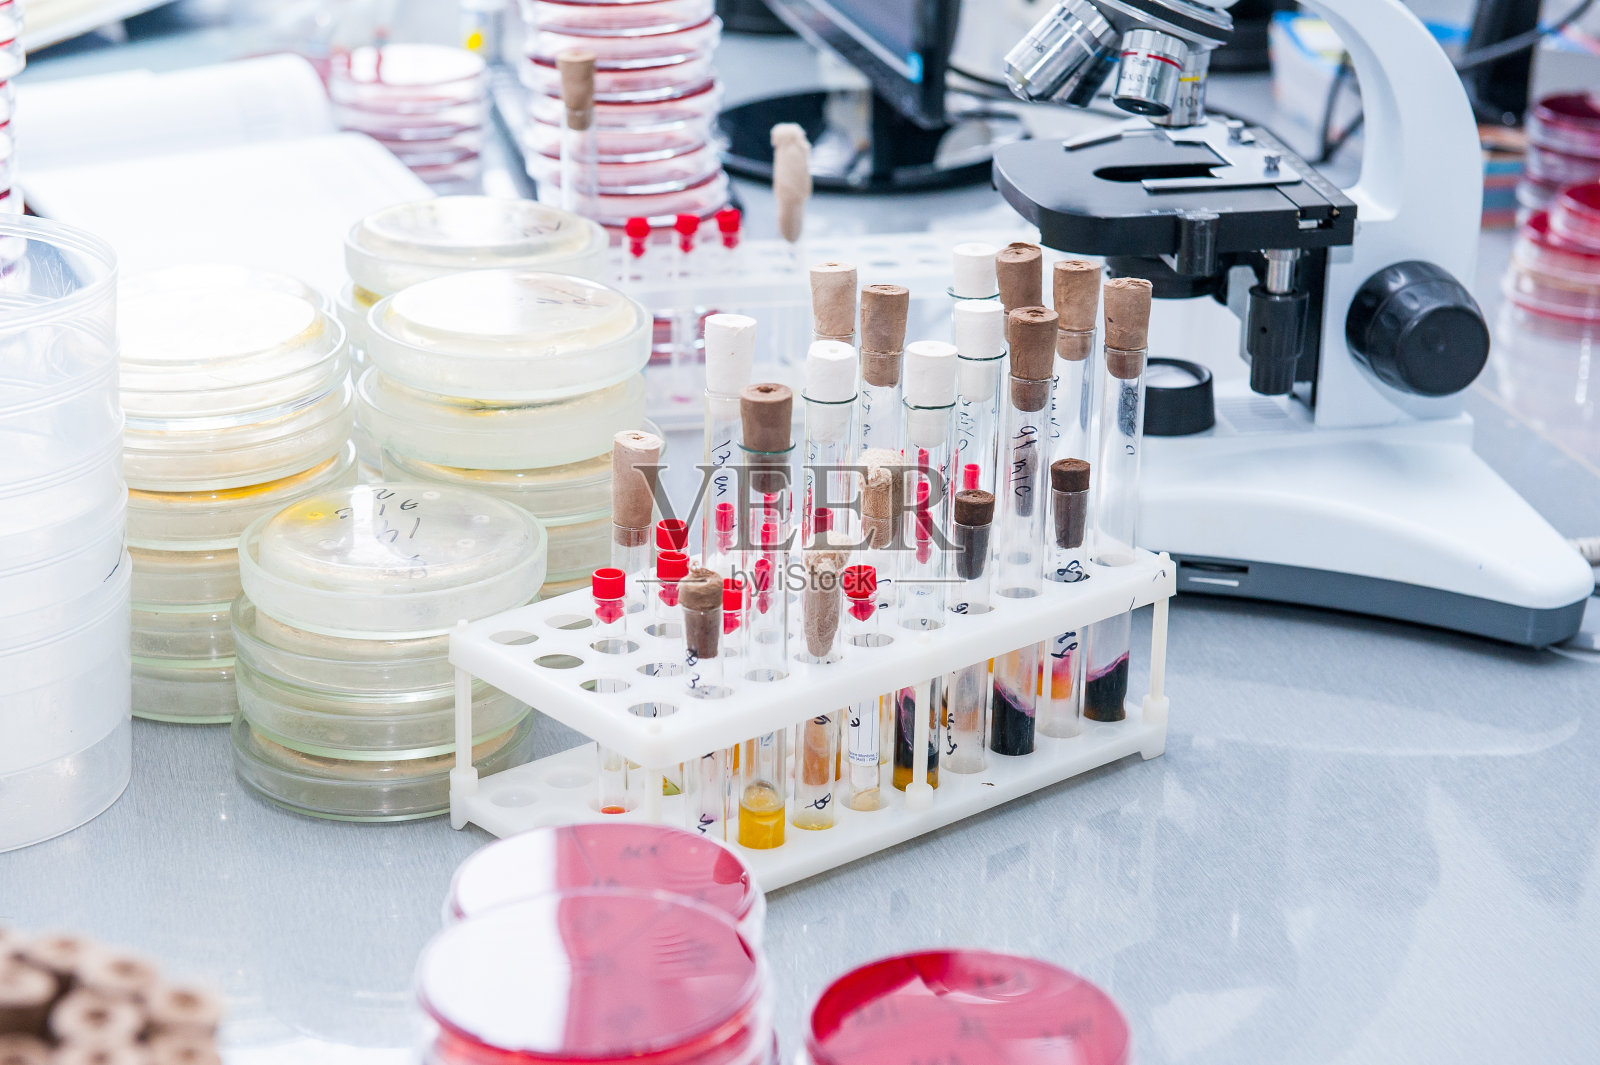 微生物实验室详情;培养细菌的培养皿，试管，显微镜等。有选择性的重点照片摄影图片